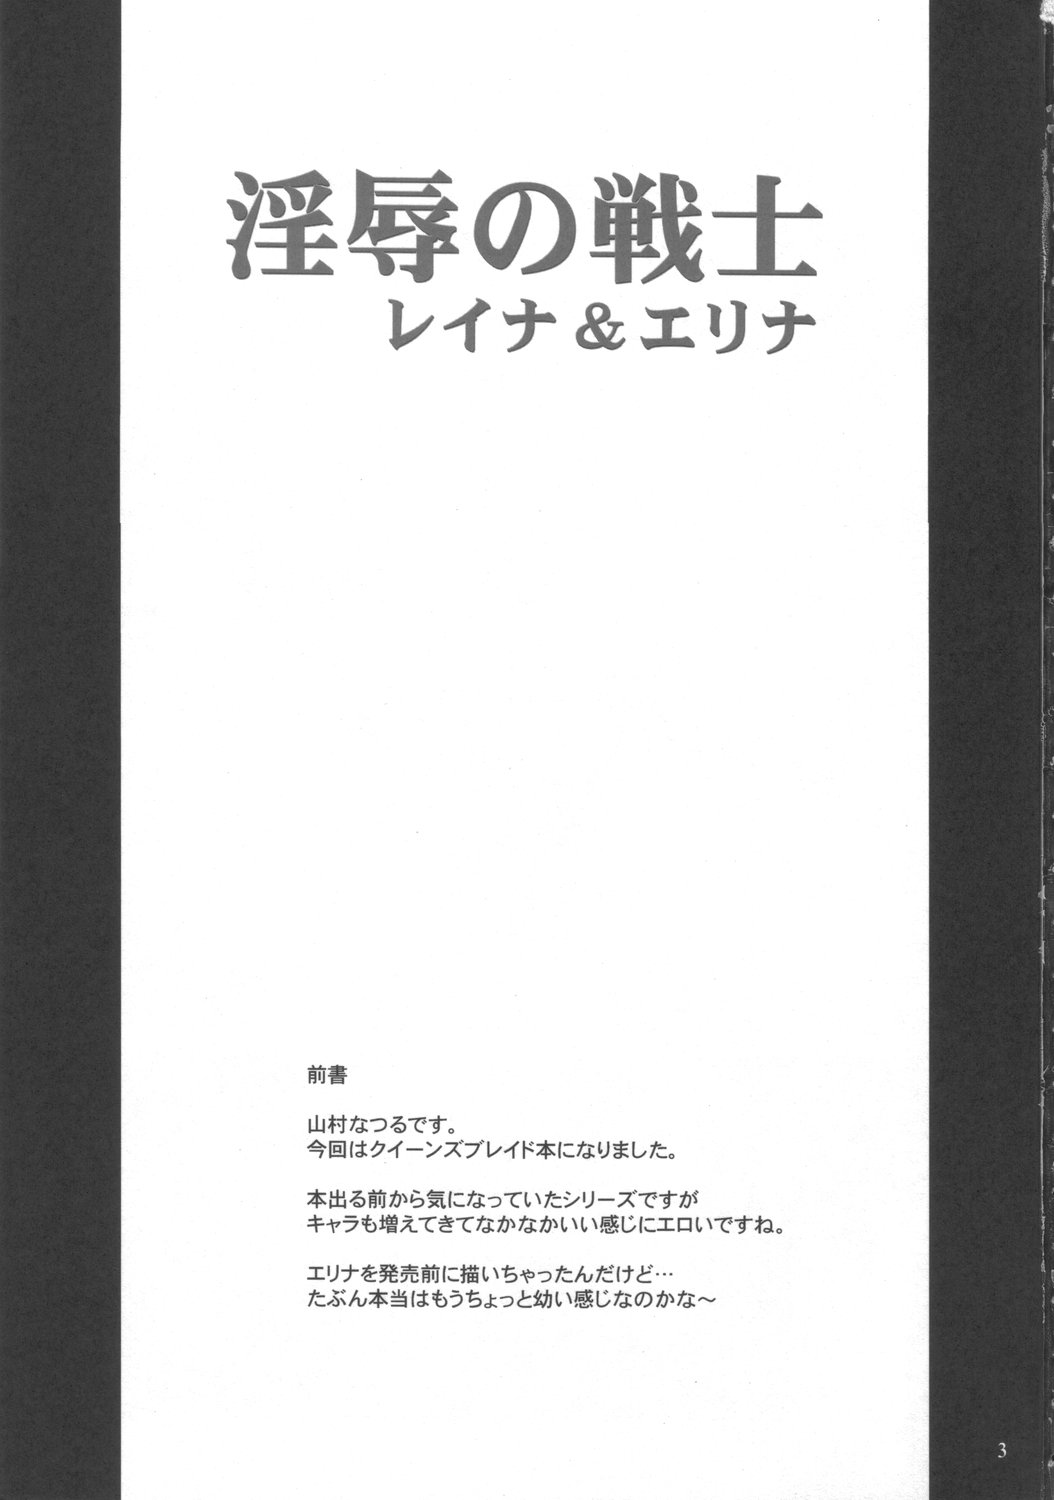 (SC33) [Anglachel (Yamamura Natsuru)] Injoku no Senshi Leina & Elina (Queen's Blade) page 2 full